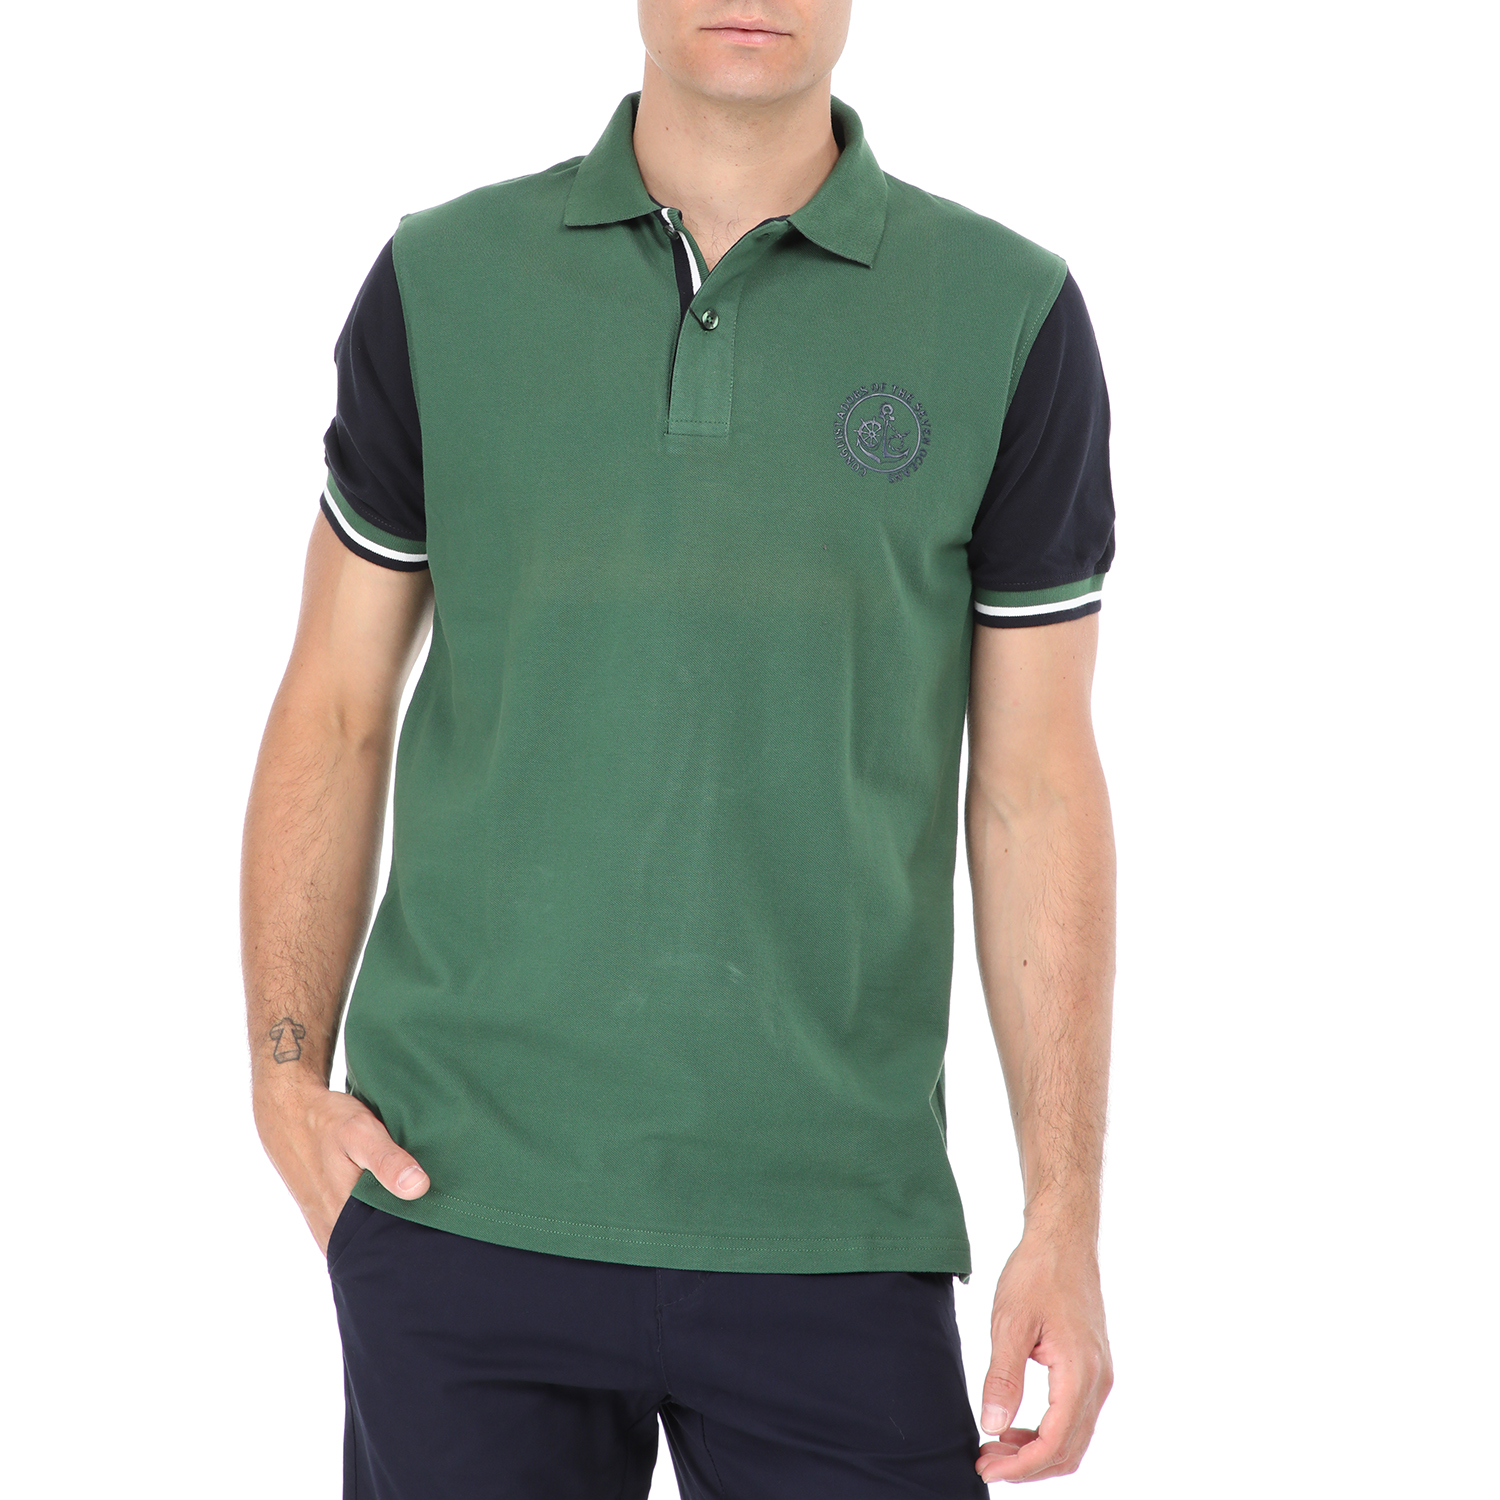 Ανδρικά/Ρούχα/Μπλούζες/Πόλο DORS - Ανδρική polo μπλούζα DORS πράσινη